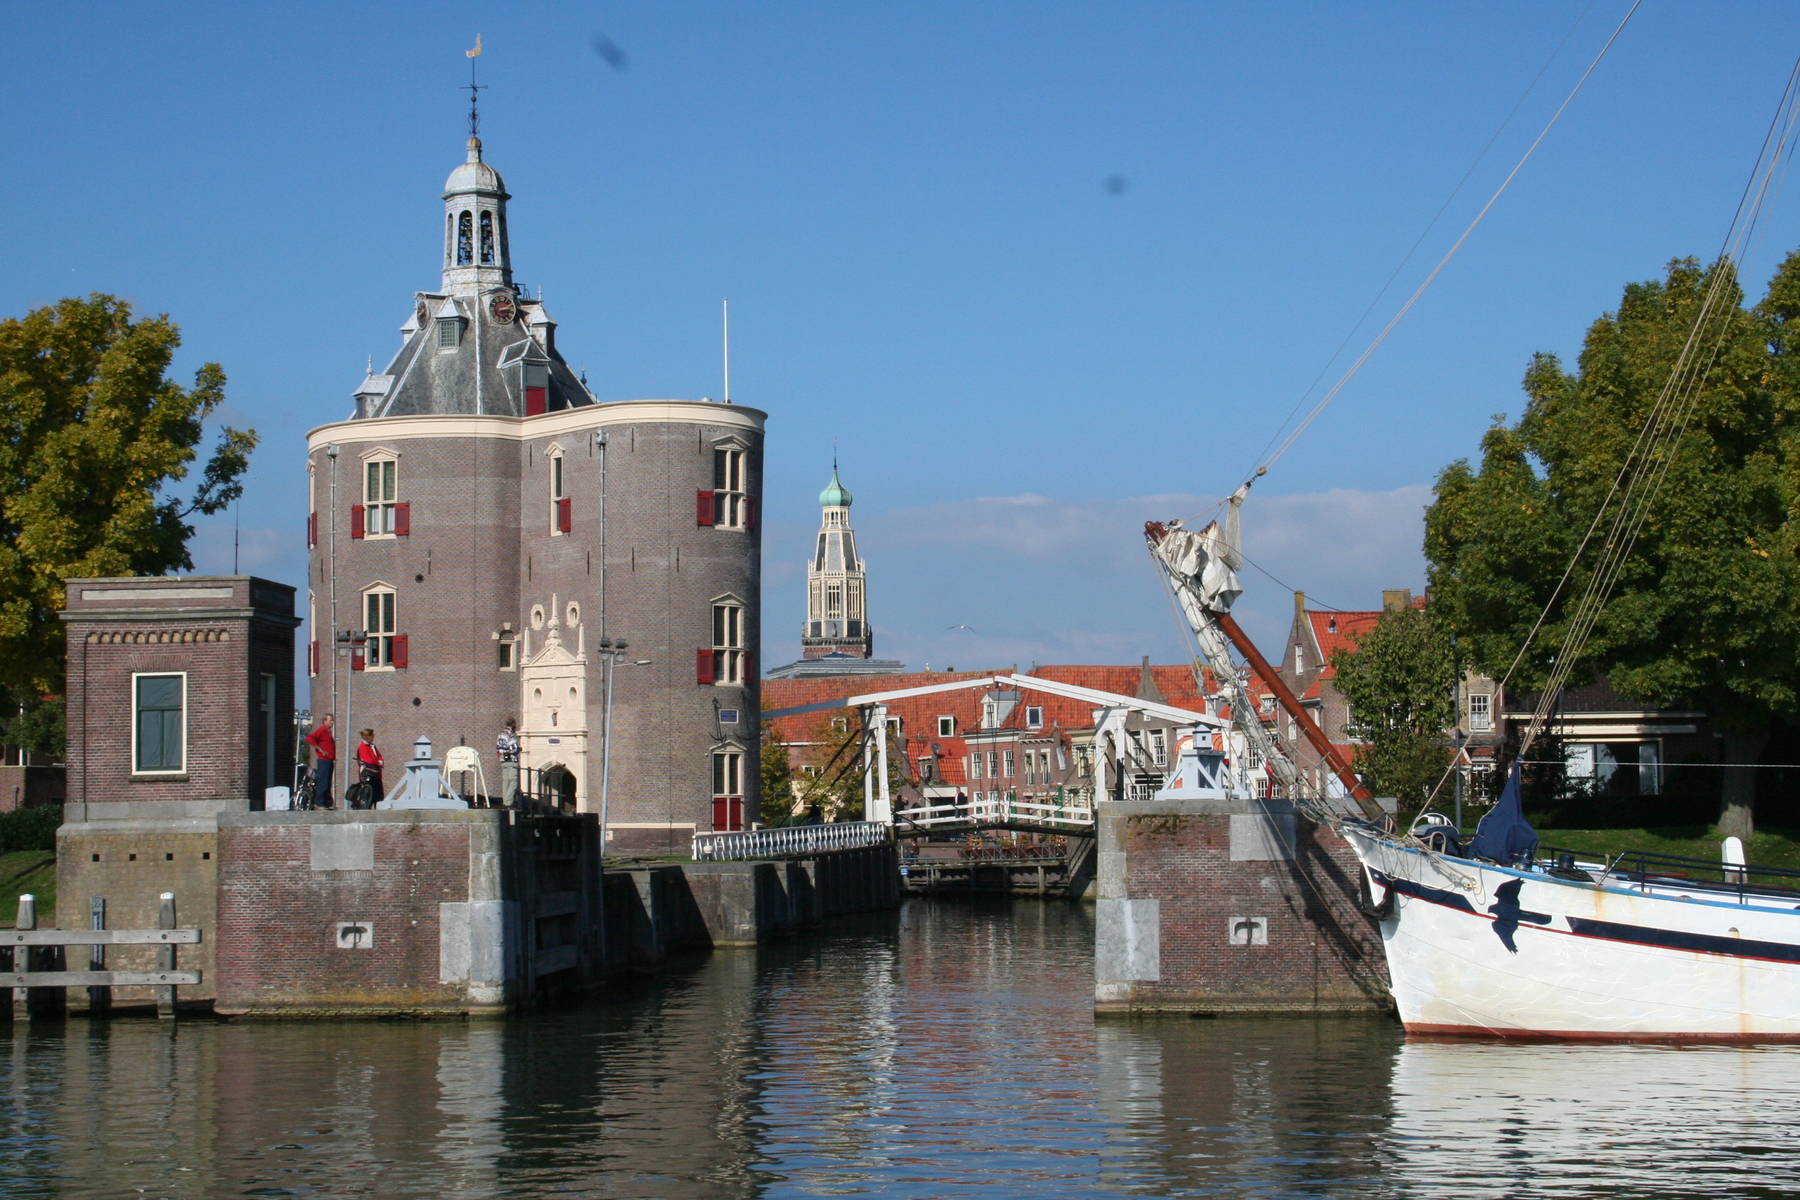 6 genussvolle Segeltage ab Enkhuizen auf dem IJsselmeer und/oder im Weltnaturerbe Wattenmeer